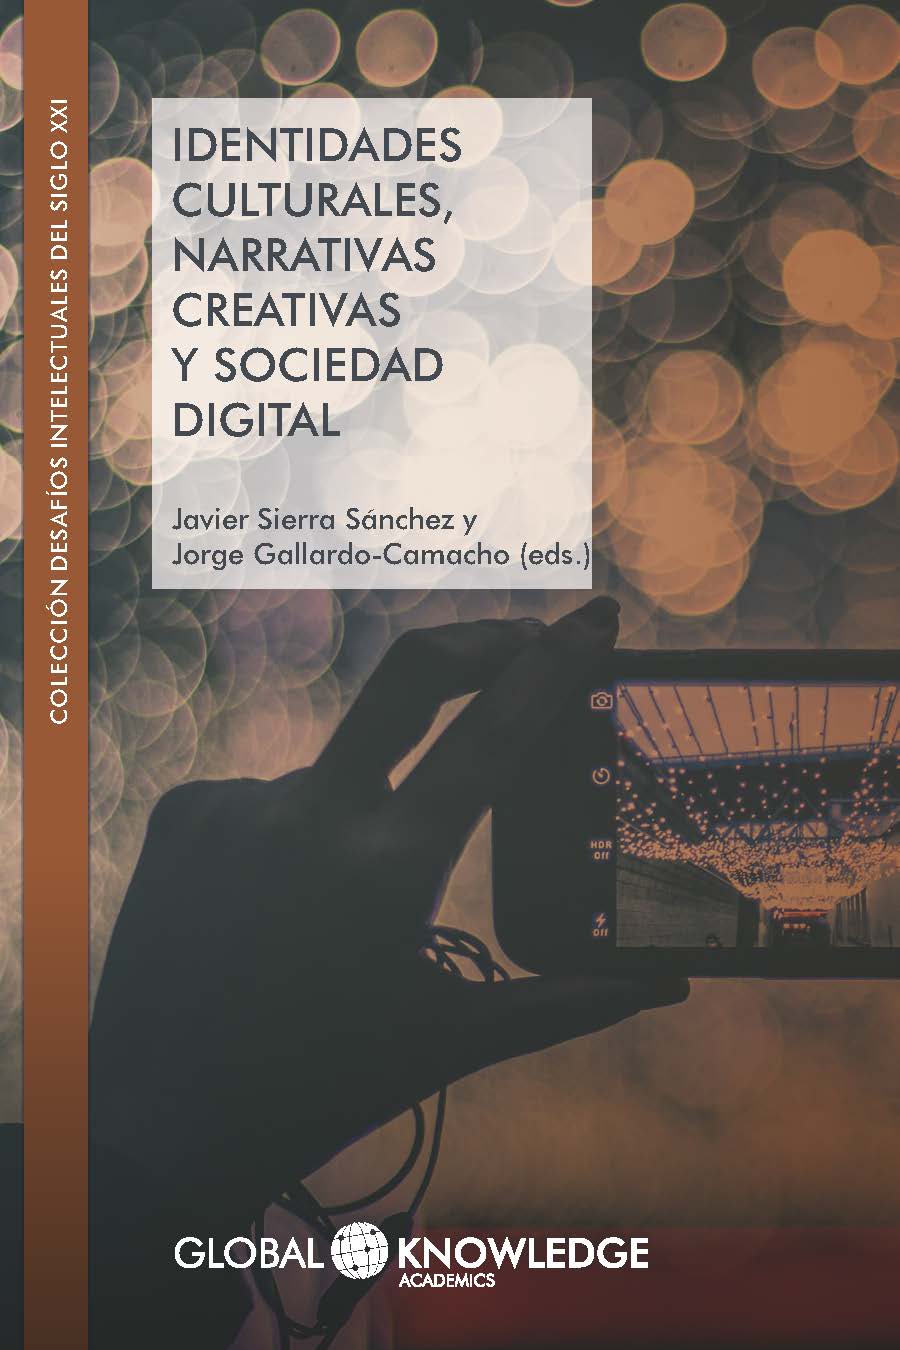 Imagen de portada del libro Identidades culturales, narrativas creativas y sociedad digital